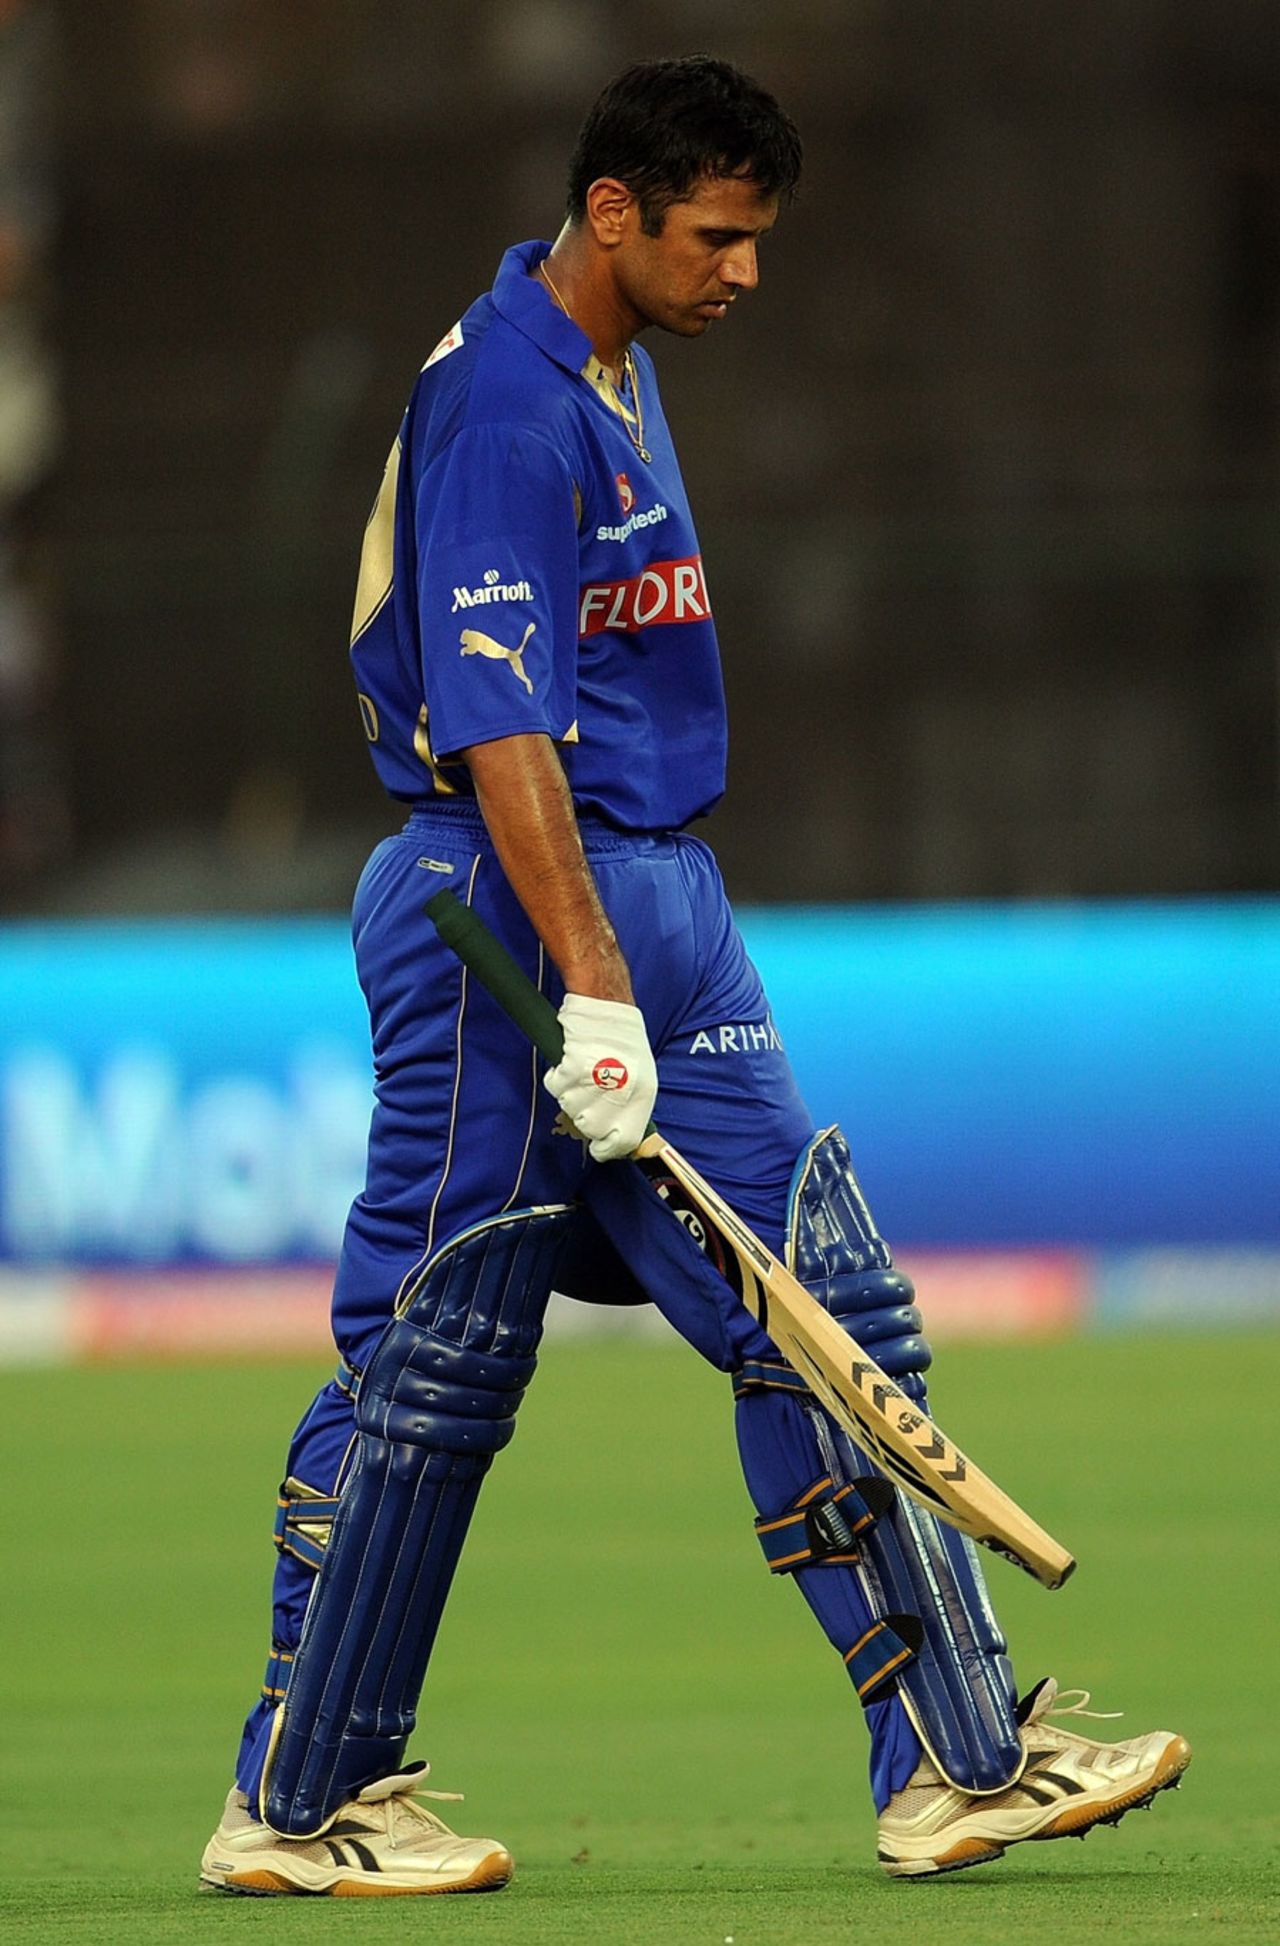 Rahul Dravid walks back after being dismissed for 38, Rajasthan Royals v Delhi Daredevils, IPL 2011, Jaipur, April 12, 2011